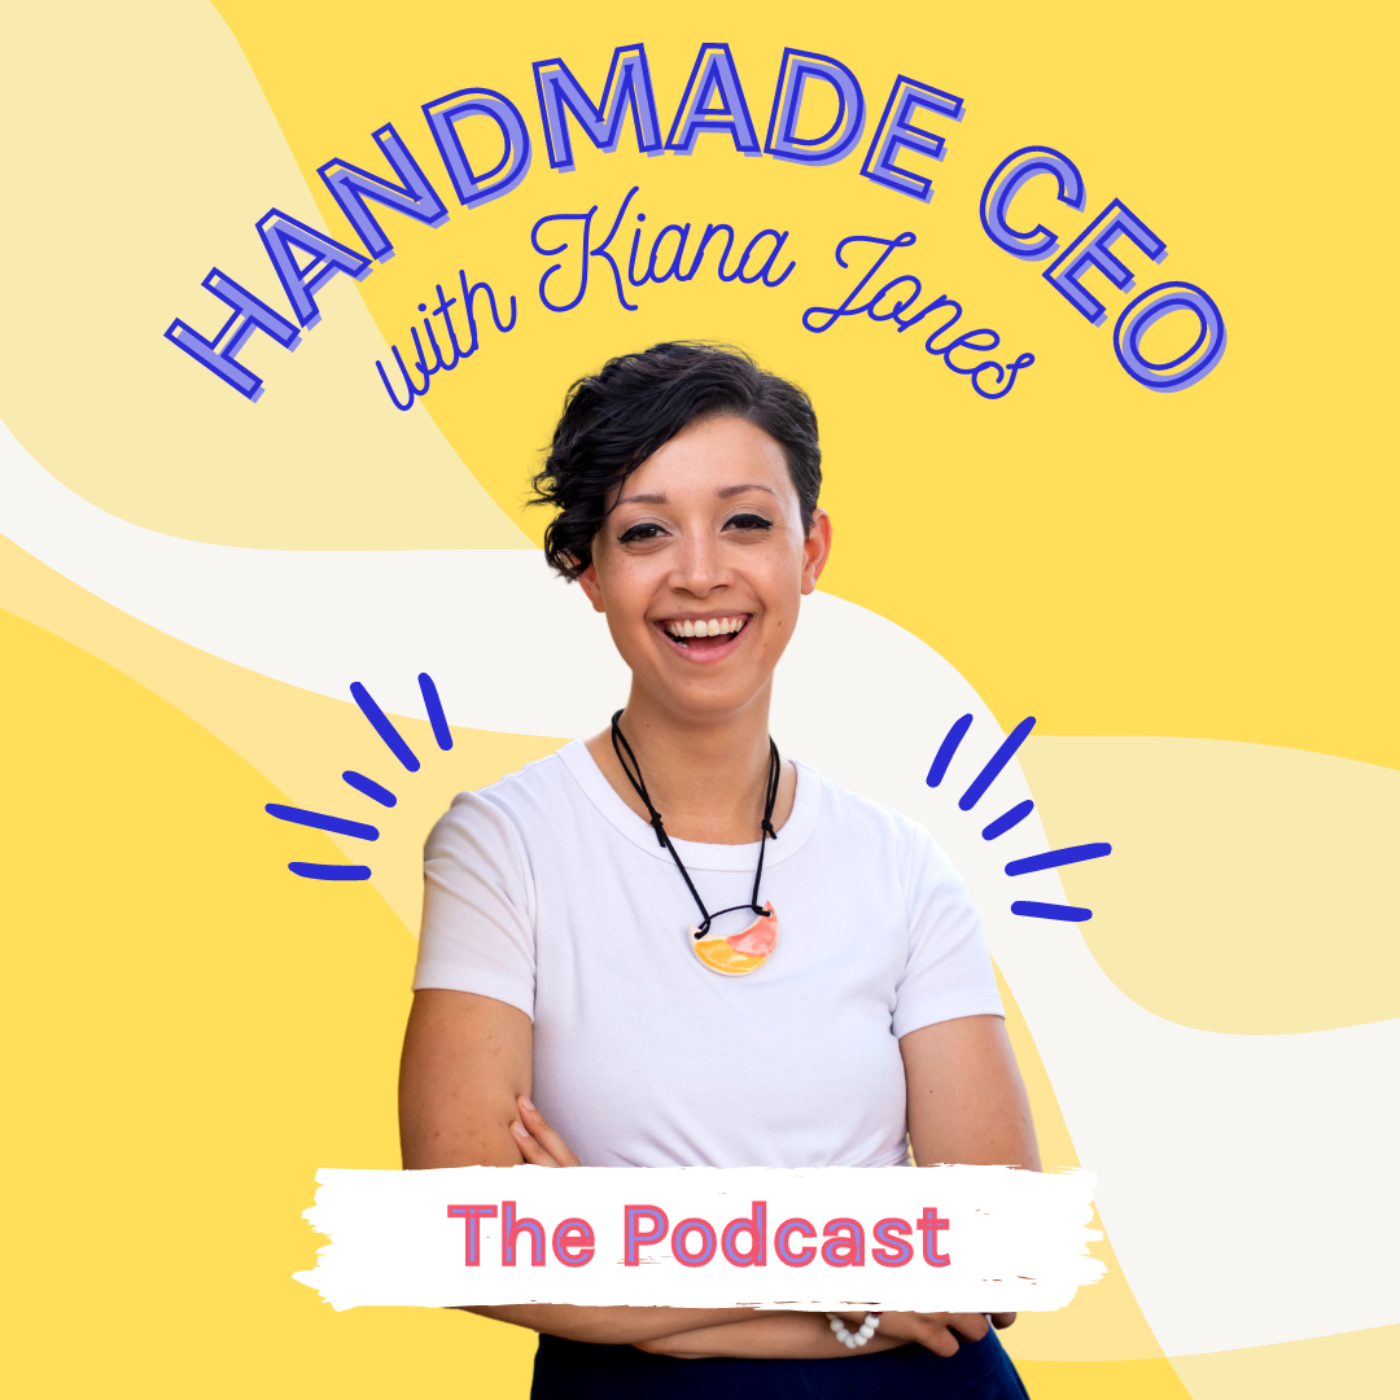 Artwork for podcast Handmade CEO Podcast